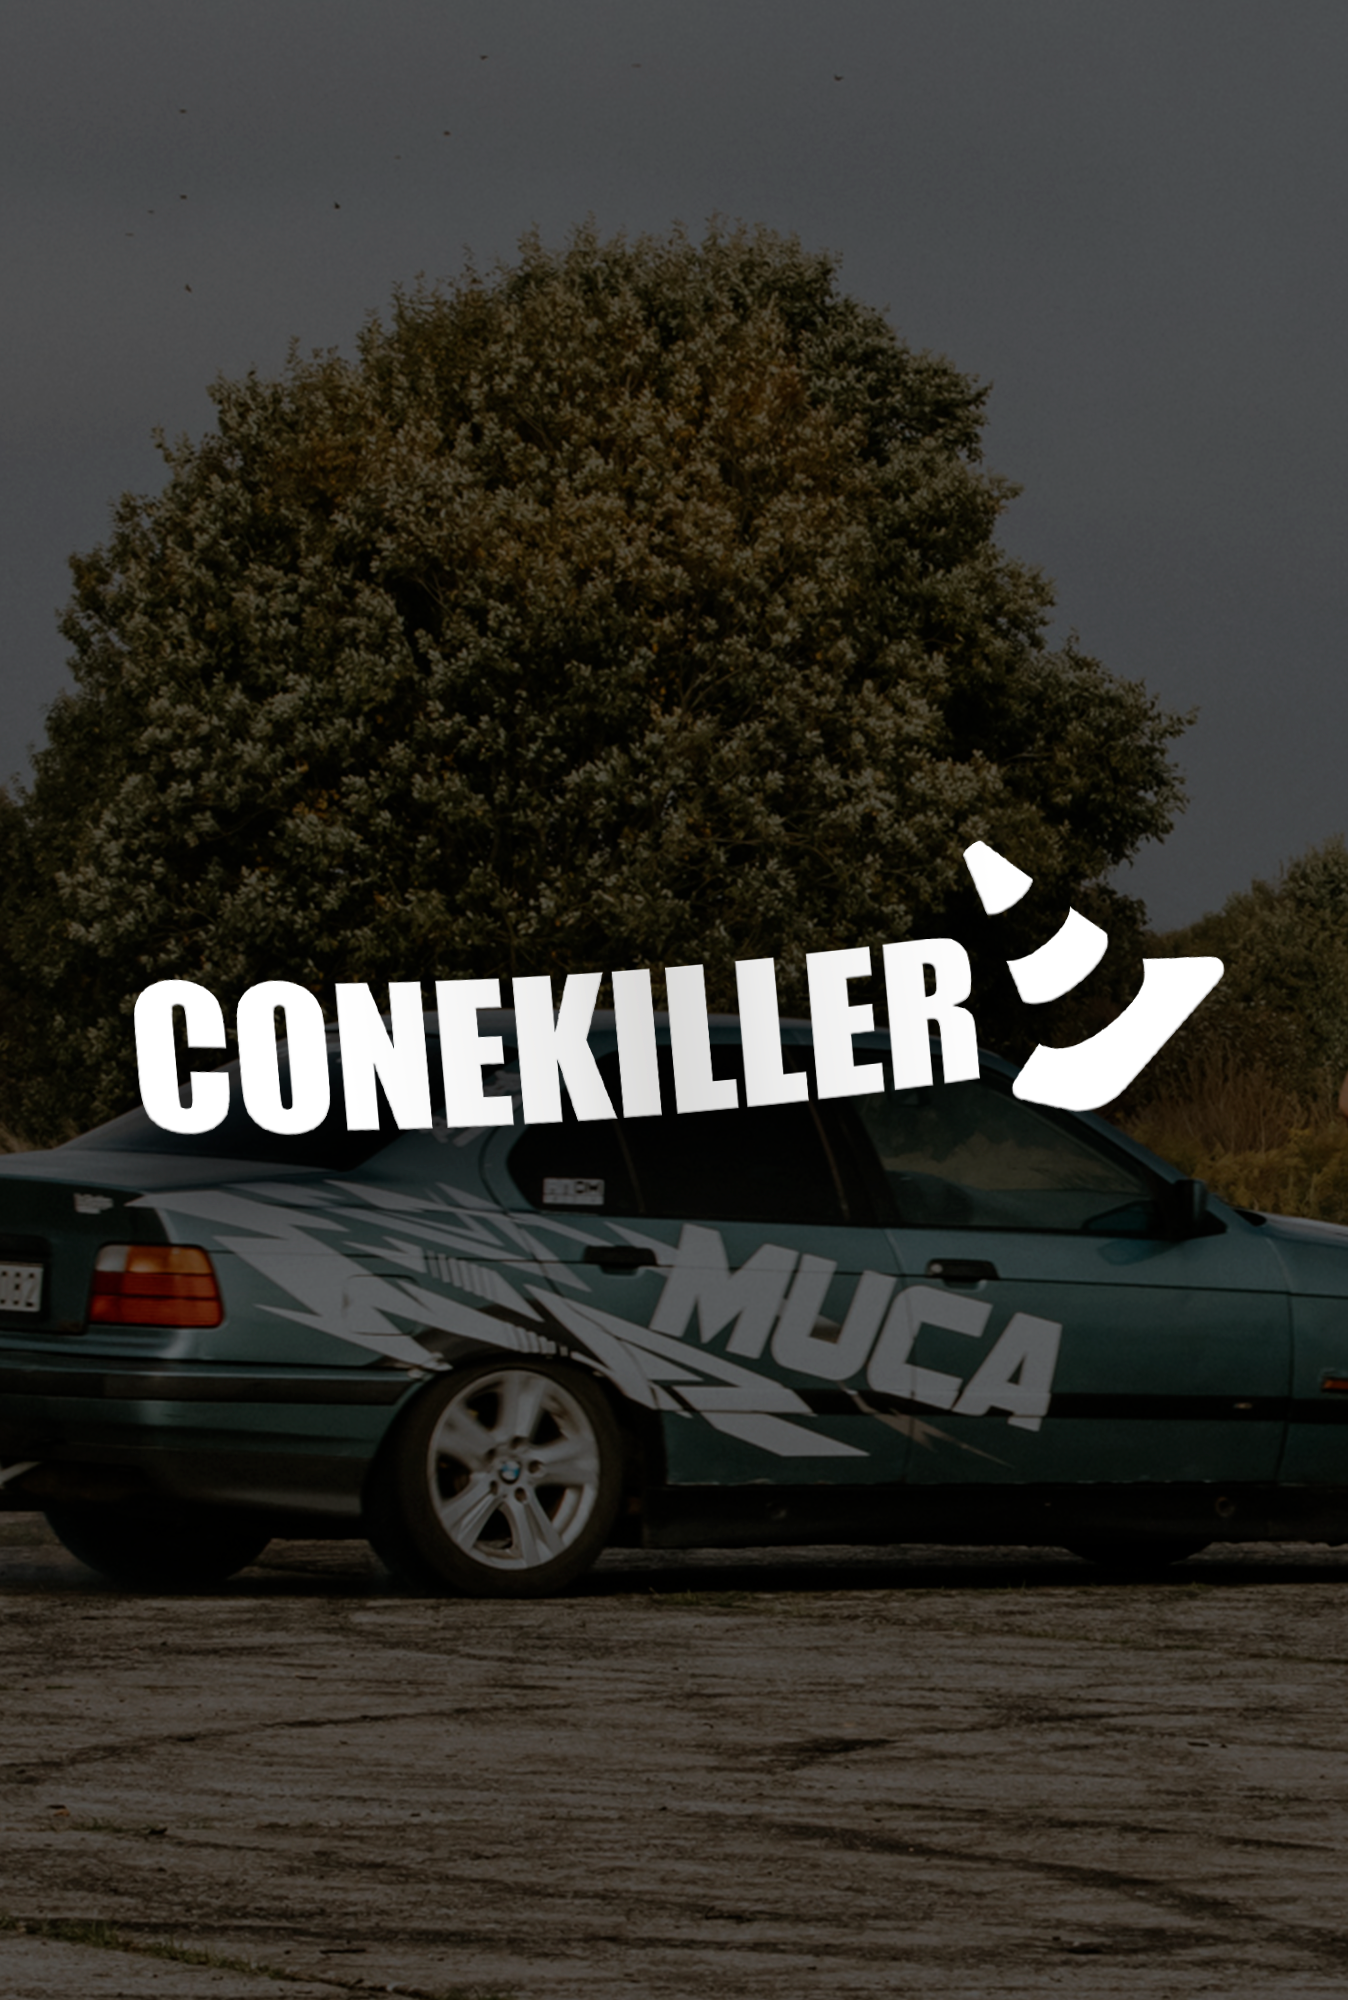 ''ConeKiller 02'' - Plotted Vinyl Sticker